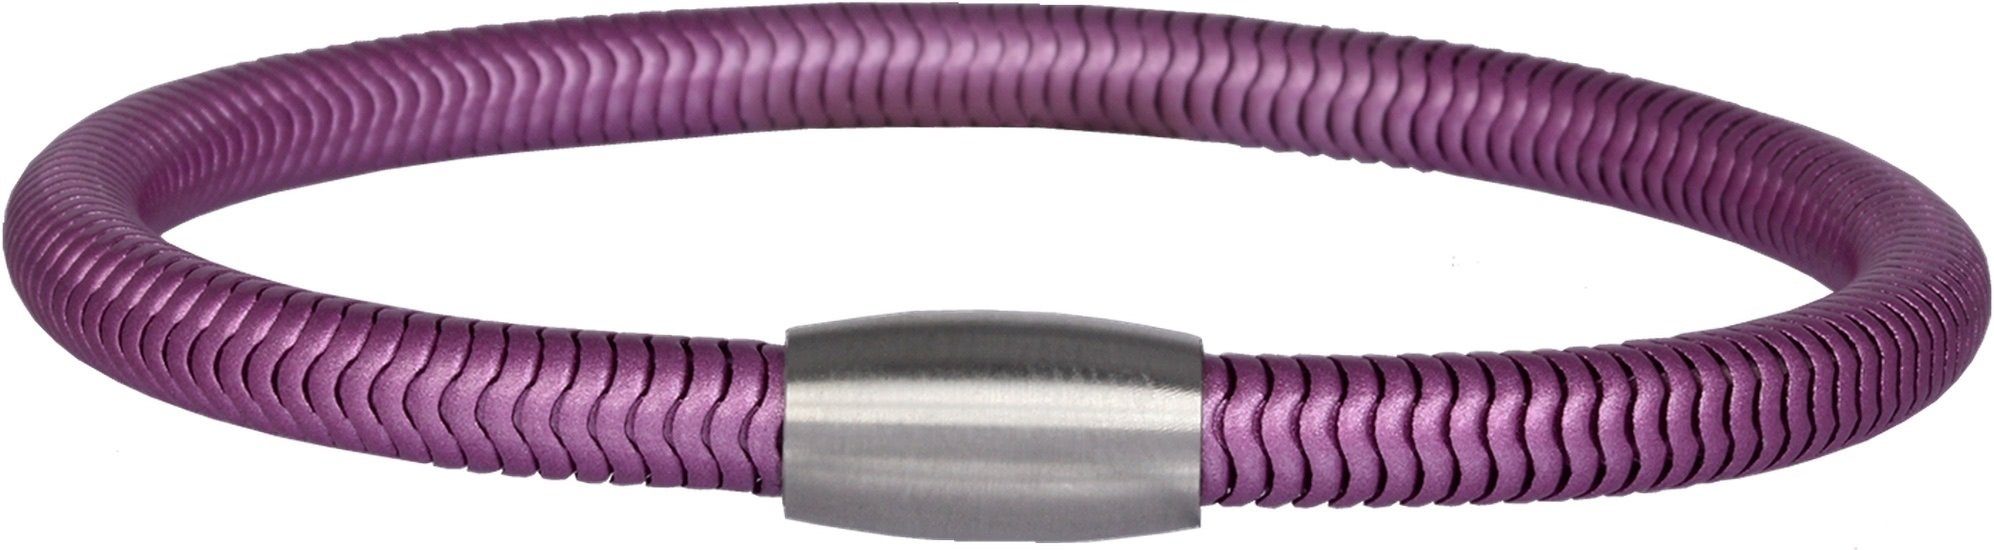 Steel), Edelstahl violett Damen Armband (Schlange) ca. aus SilberDream 20cm, Arm-Schmuck Edelstahlarmband Armband (Stainless (Armband), Fa SilberDream